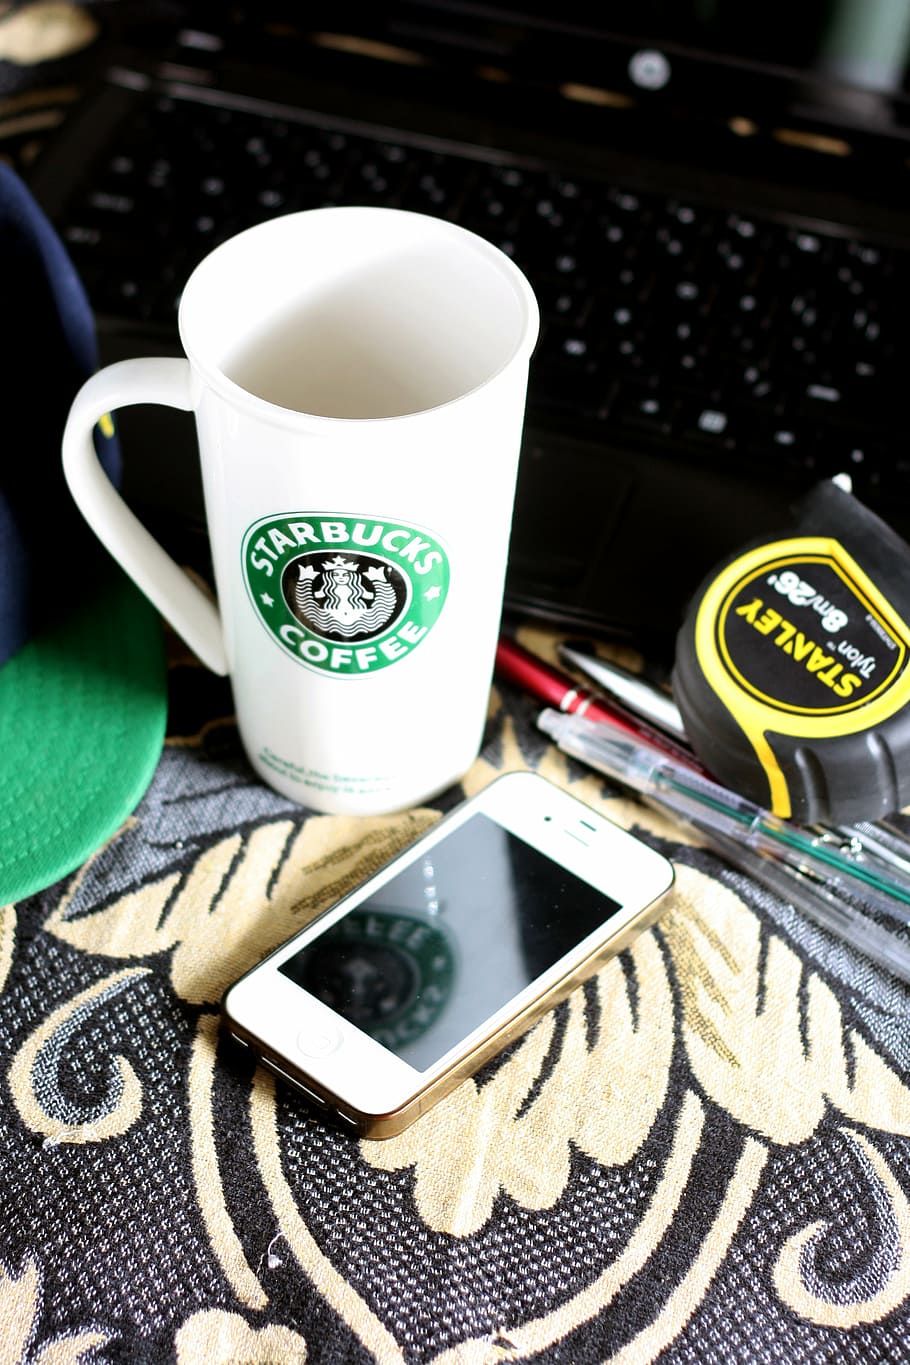 白, 緑, スターバックスのマグカップ, テーブル, iPhone, スターバックス, コーヒー, マグカップ, テクノロジー, ガジェット